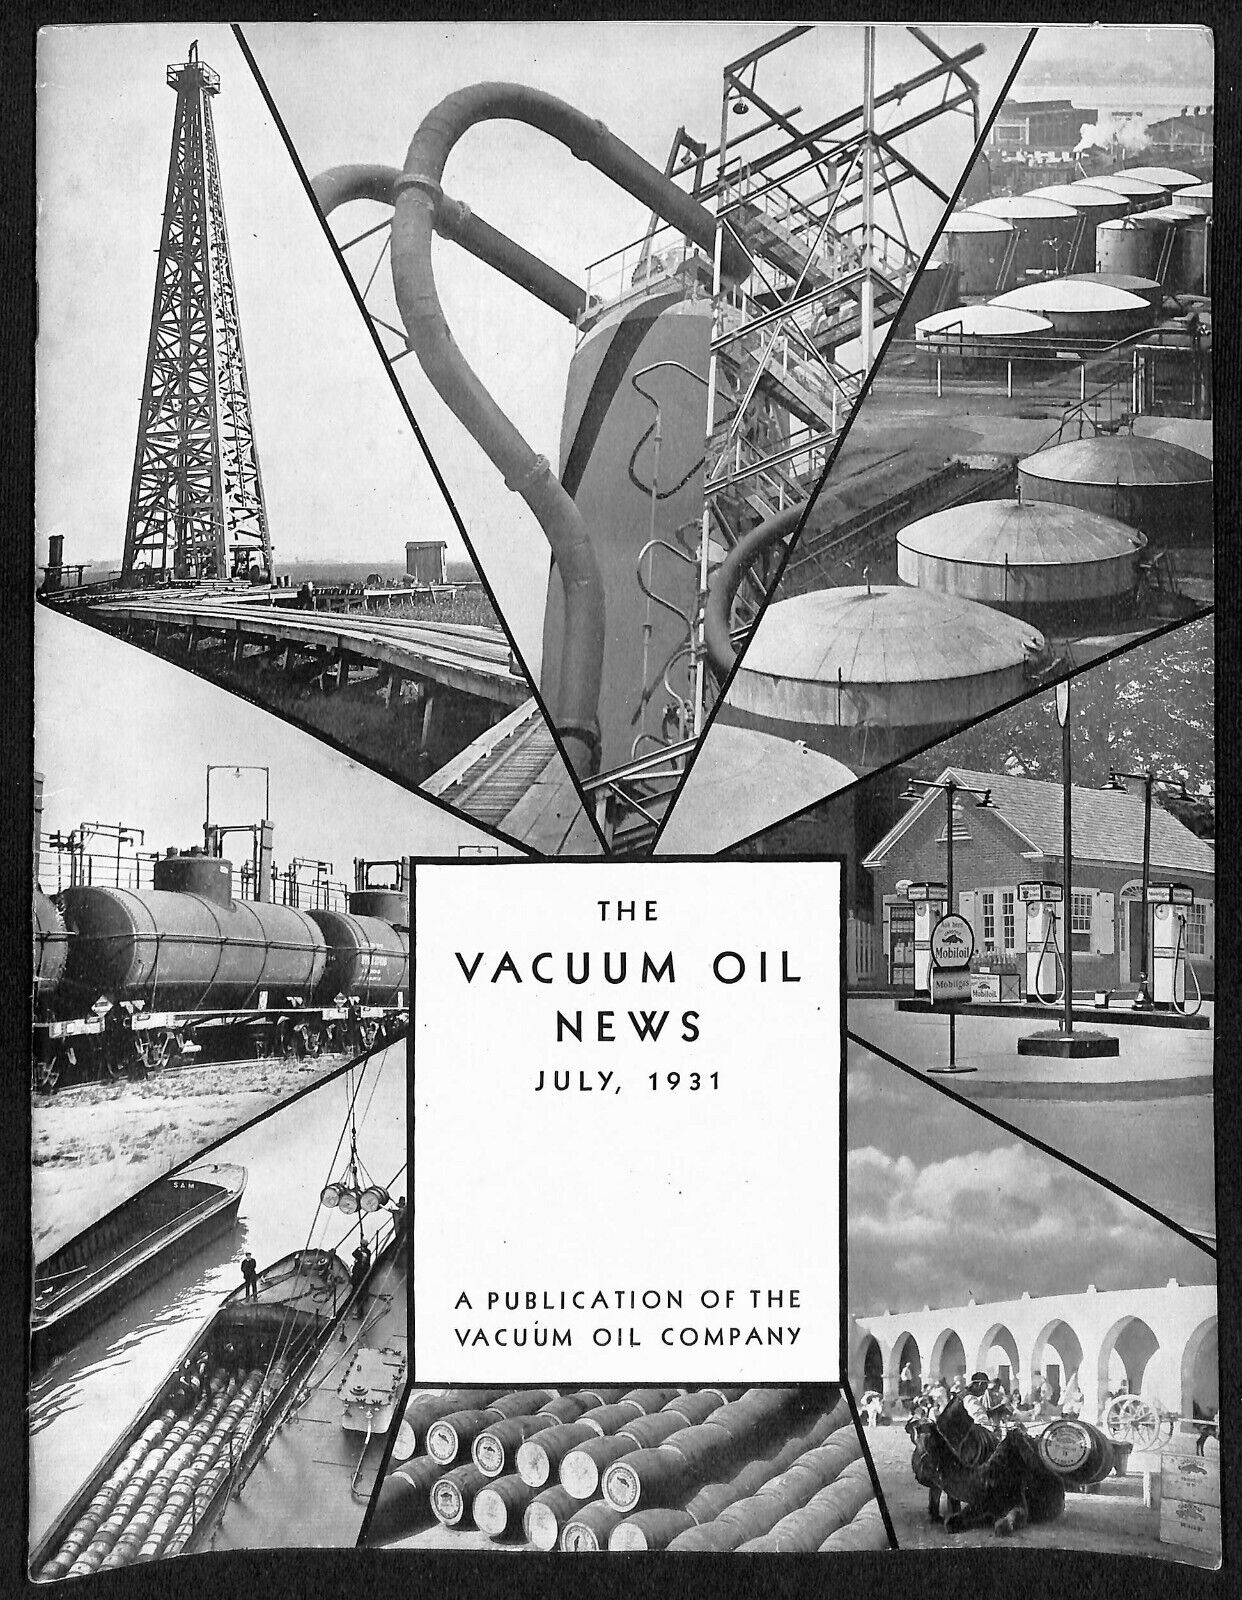 Vacuum Oil News Mobiloil Mobil Oil Gargoyle July 1931 29pp. VGC Scarce